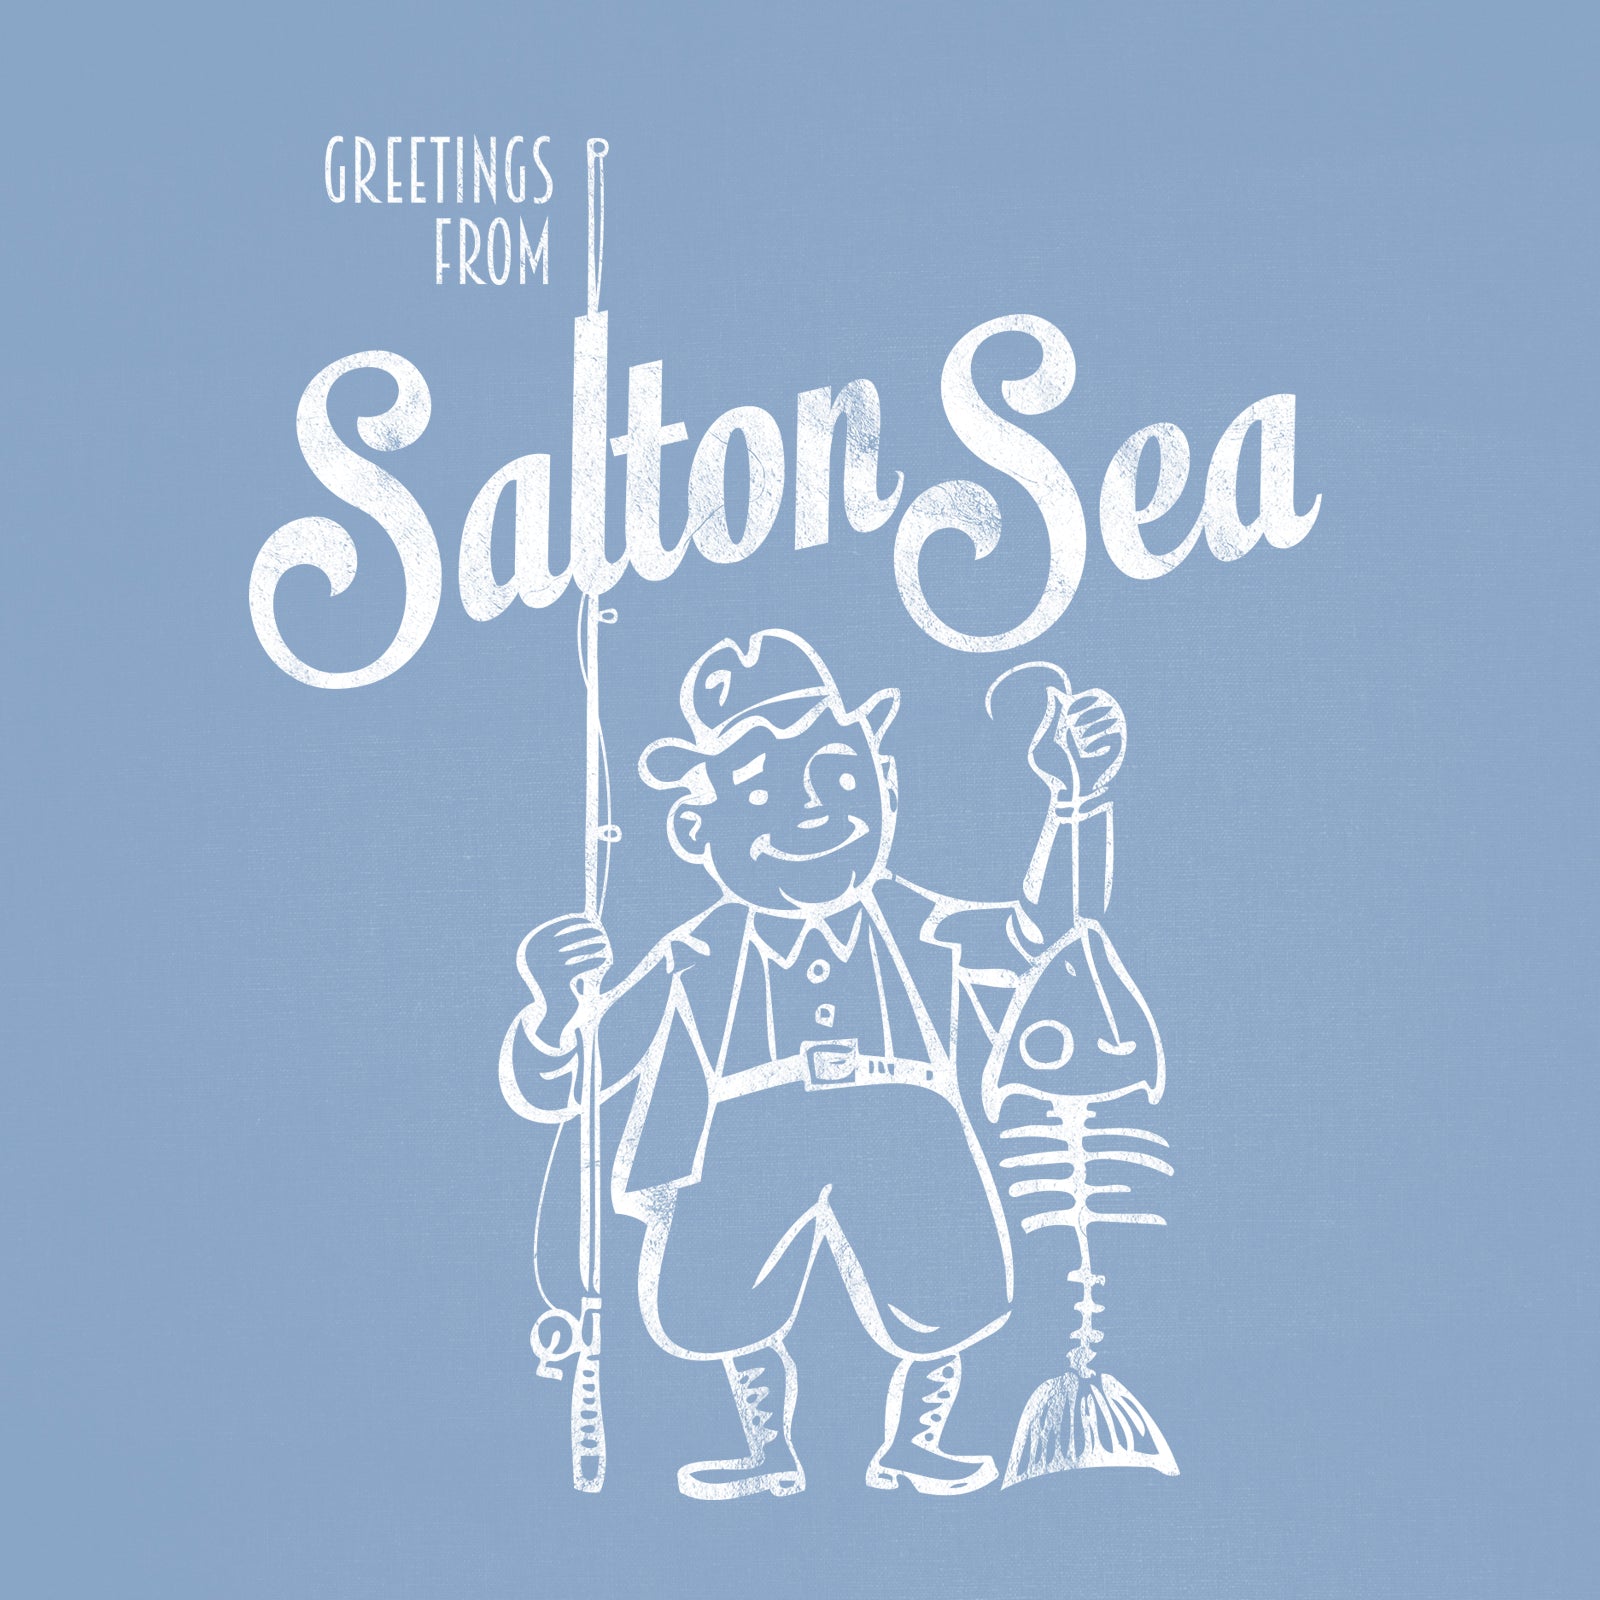 Salton Sea T-Shirt